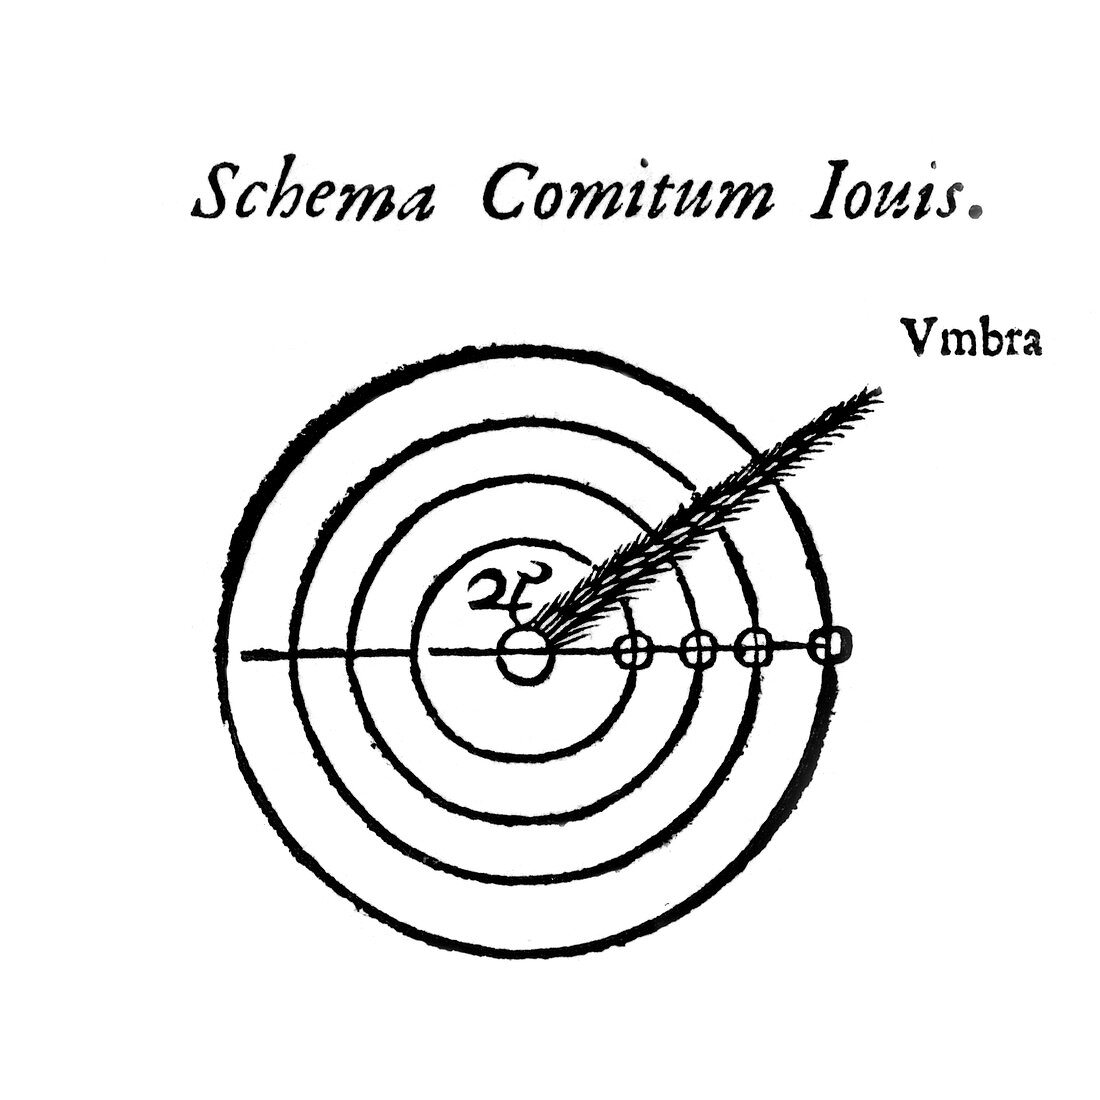 Jovian satellites diagram,1659